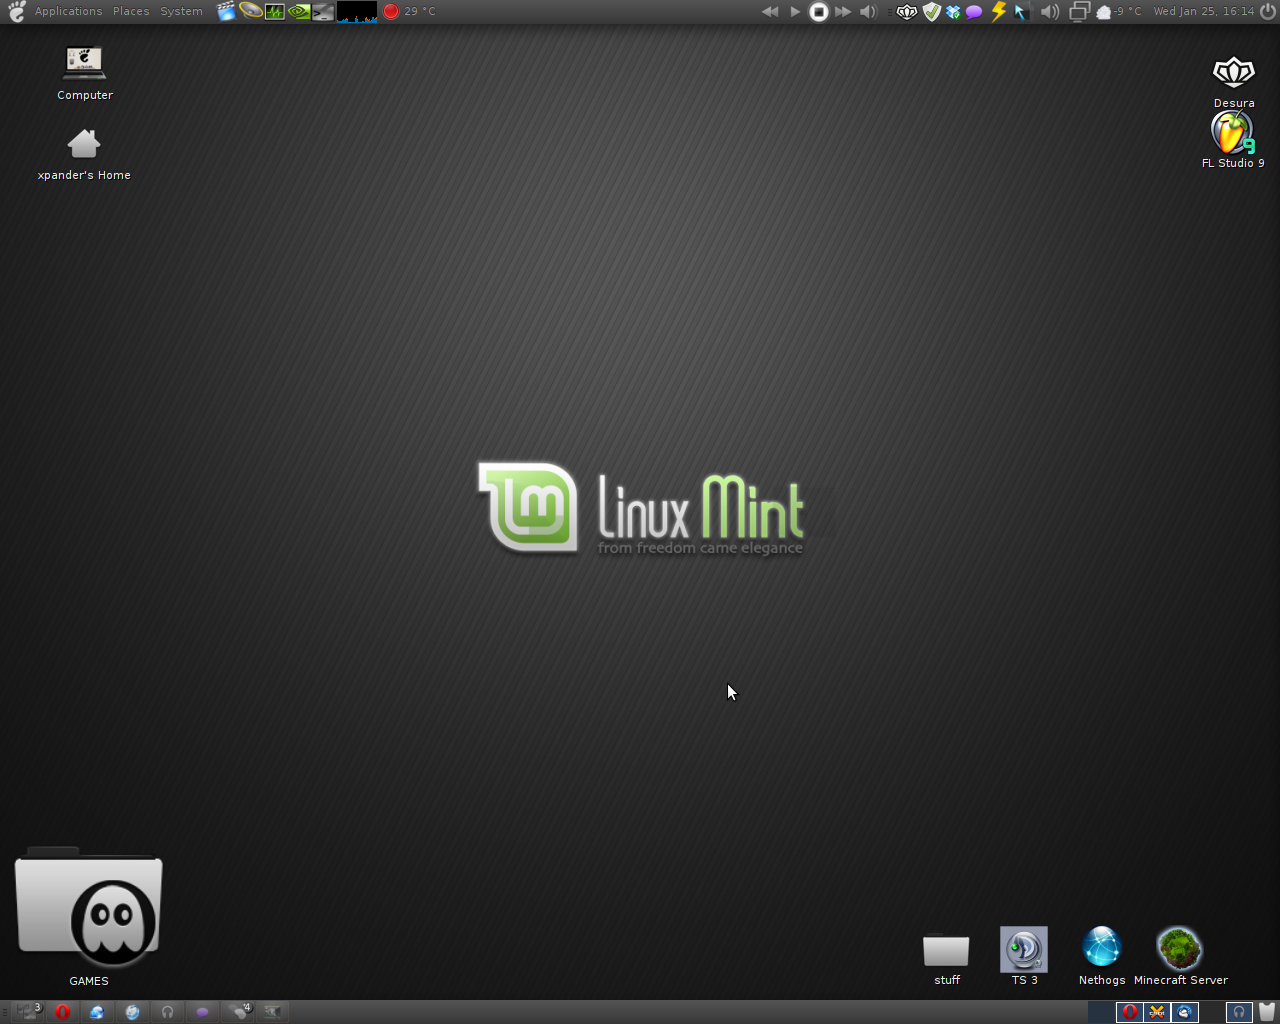 Linux Mint 12 - MATE desktop